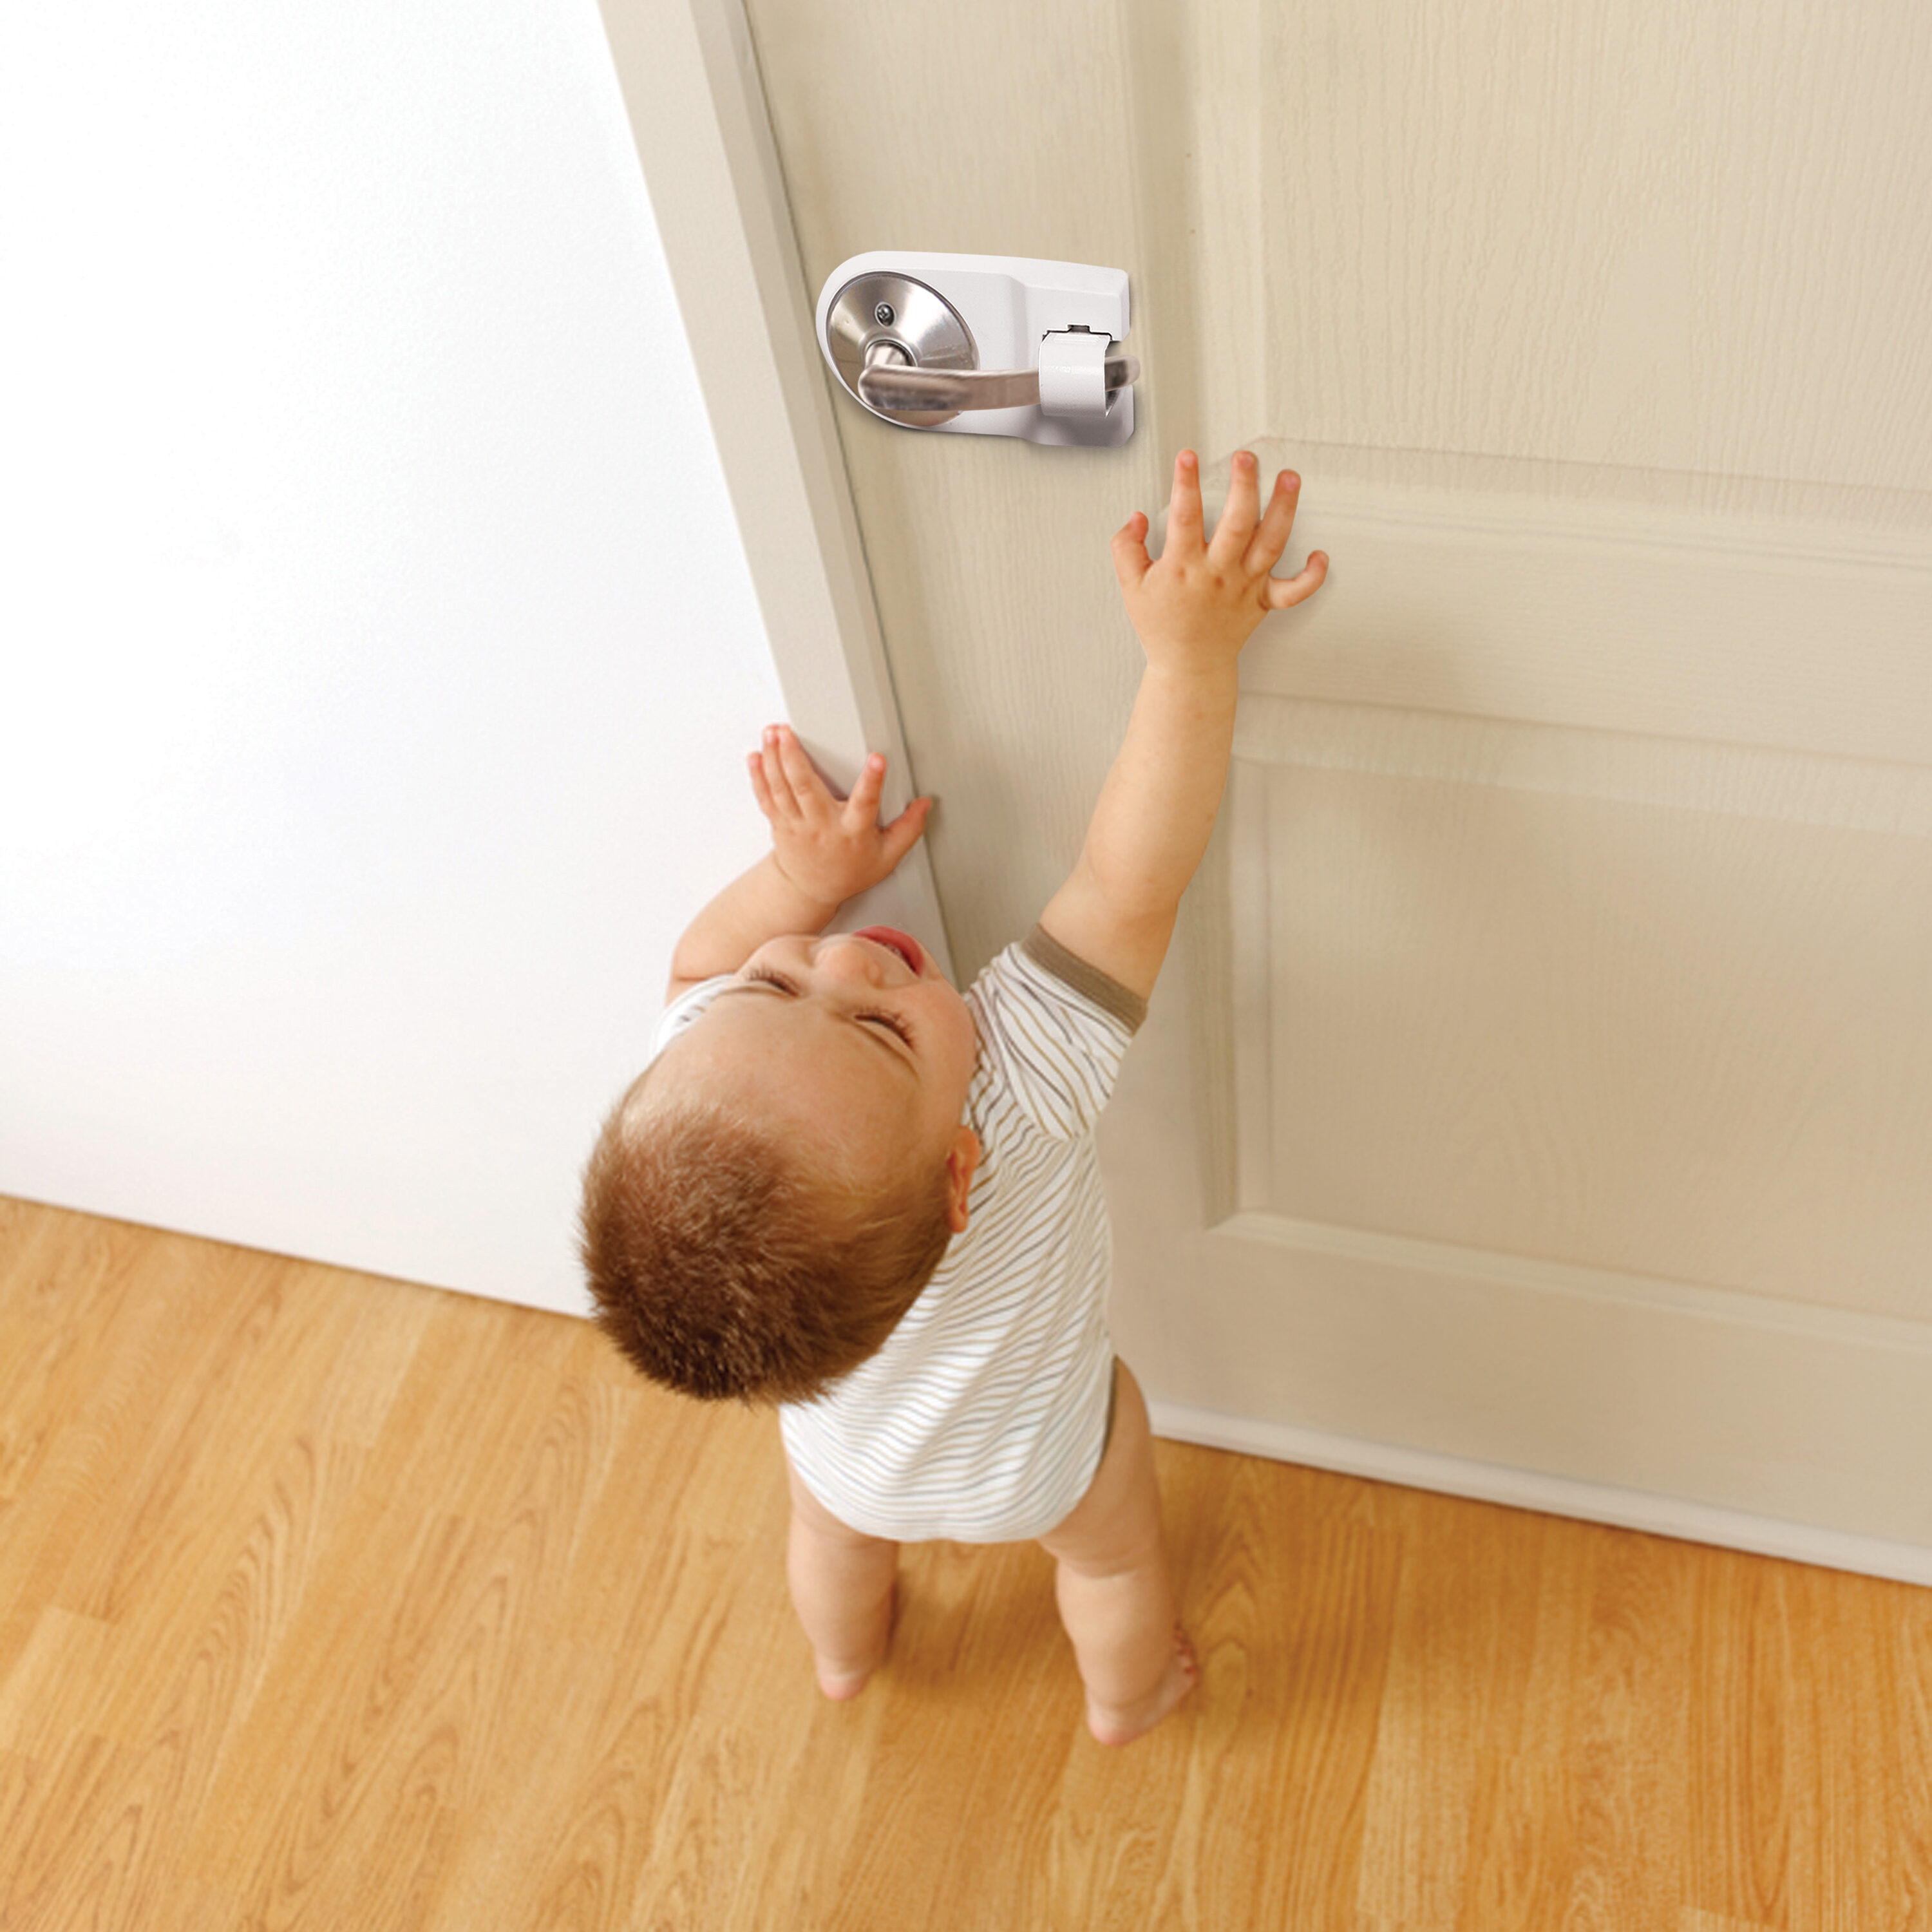  DOOR MONKEY Child Proof Door Lock & Pinch Guard - For